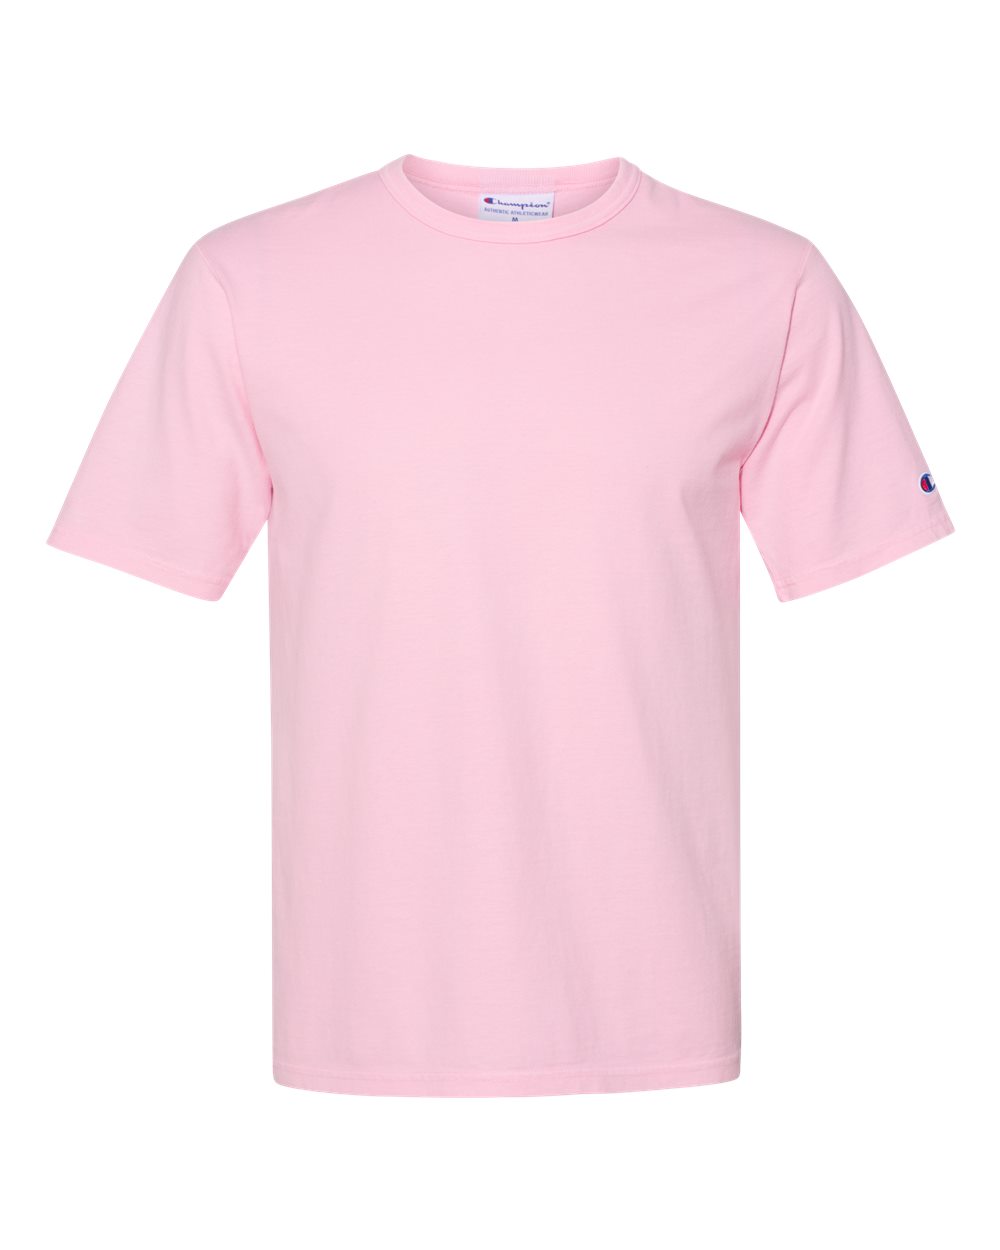 pink candy champion shirt